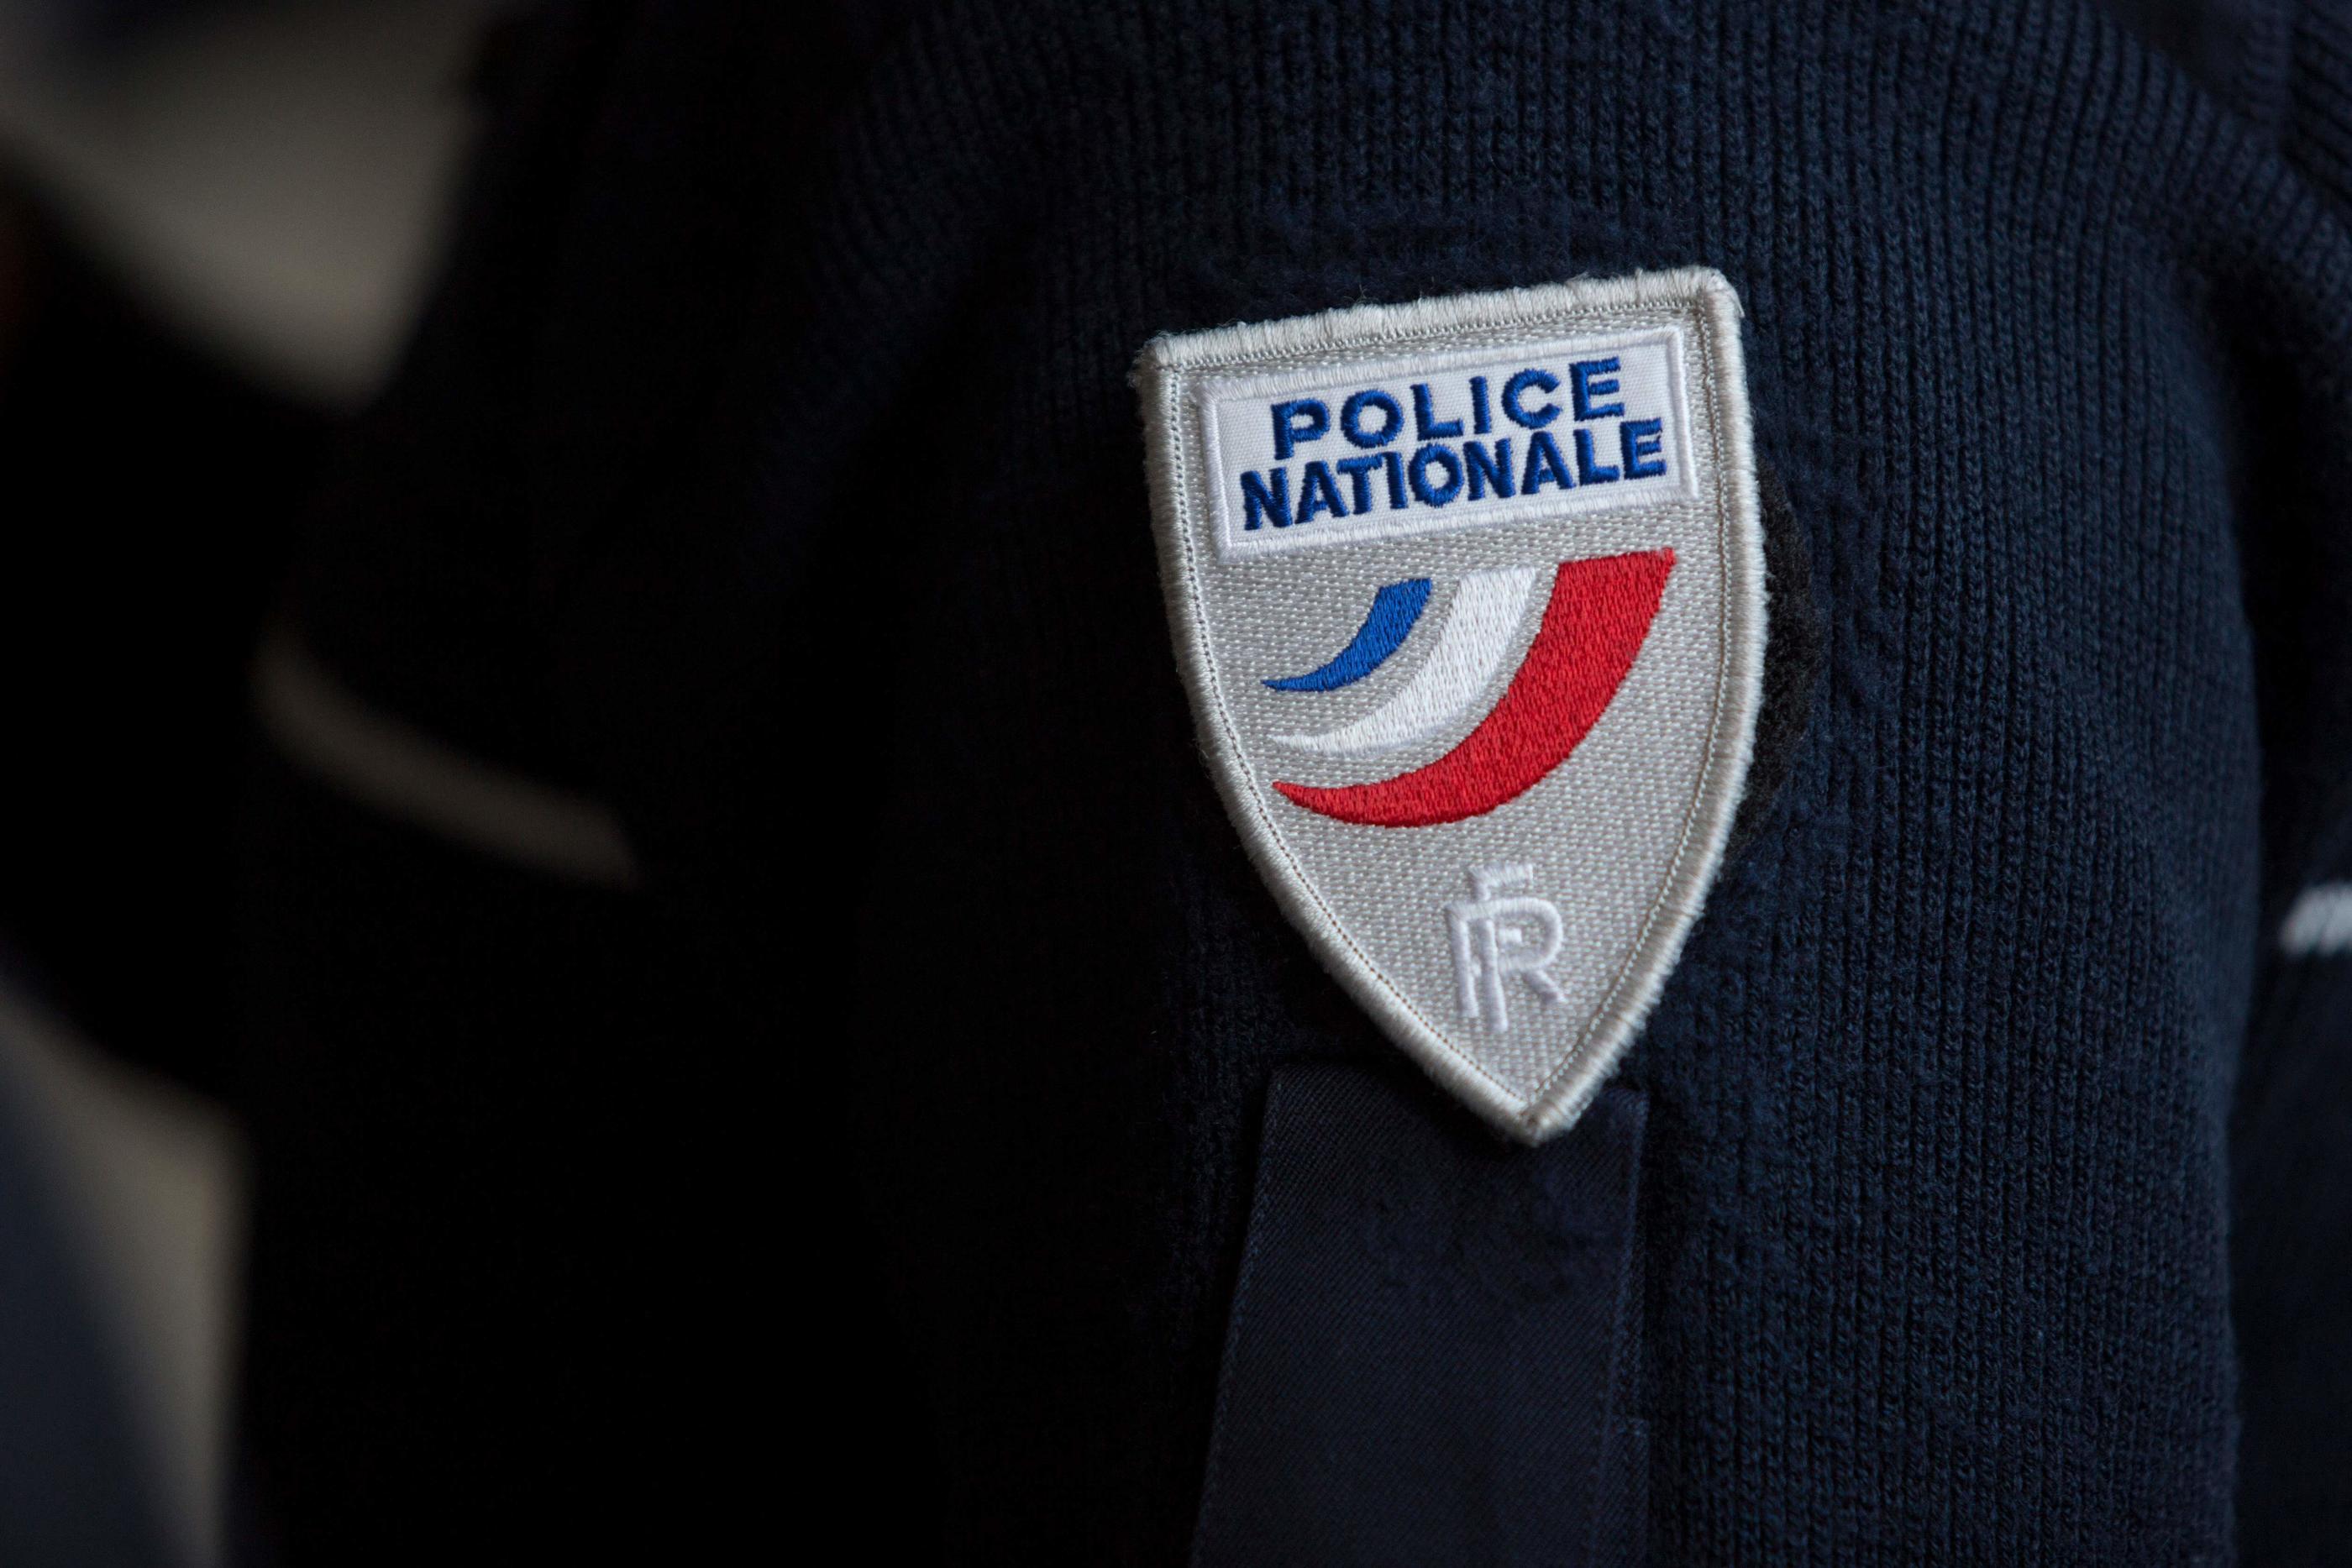 Interpellé en région parisienne, le jeune homme doit à présent être réacheminé sur La Rochelle, indique le procureur de la République de Charente-Maritime. AFP/Geoffroy Van der Hasselt